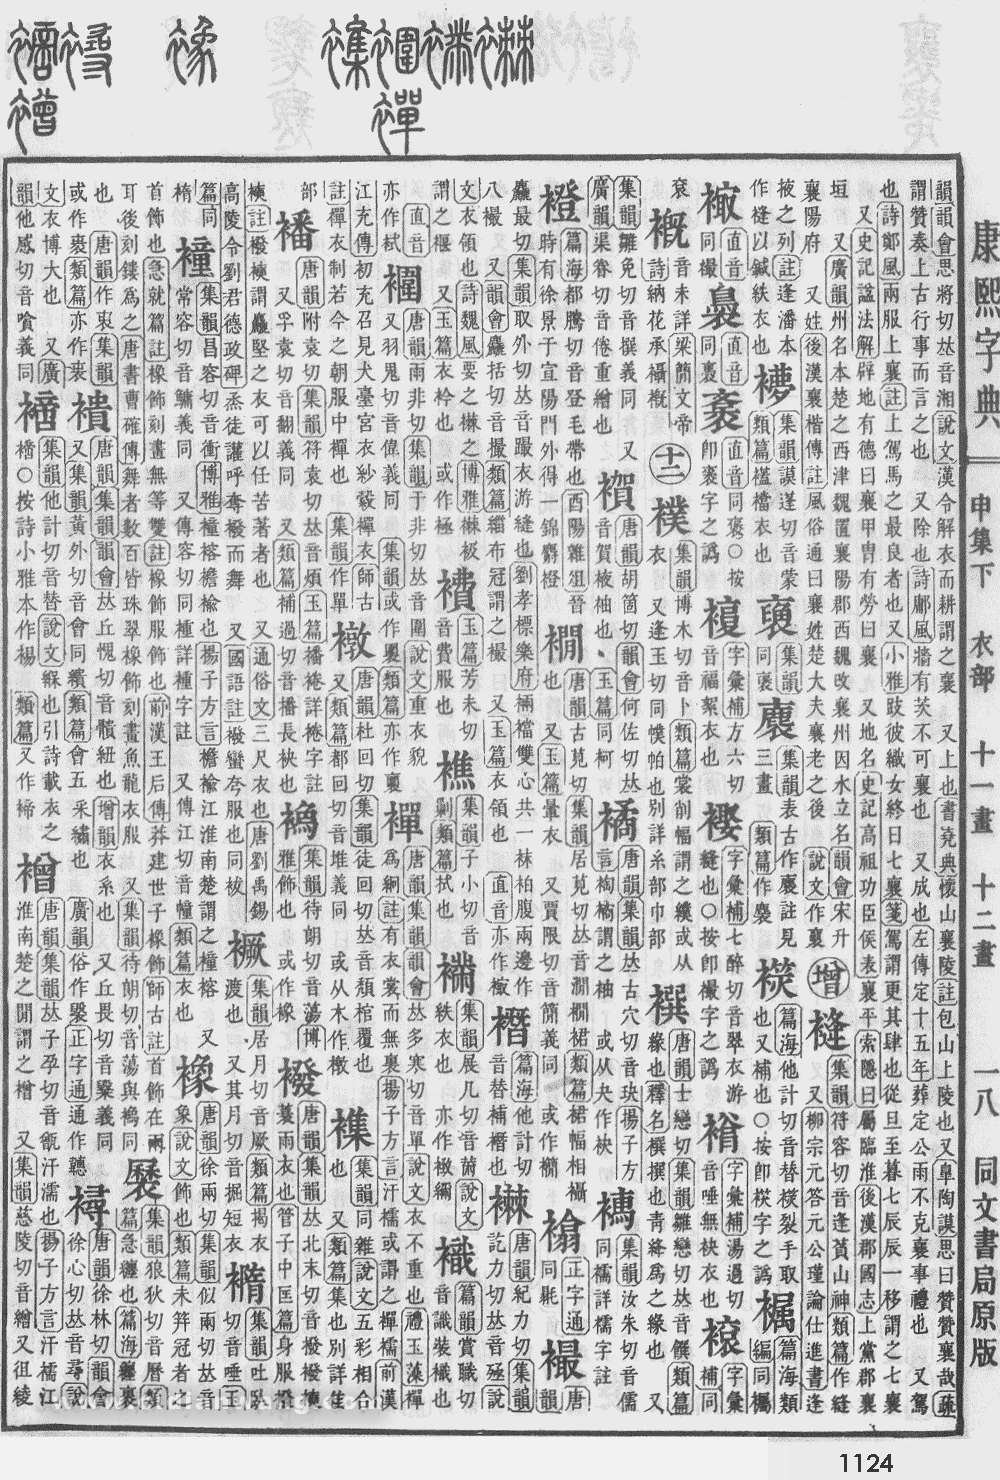 康熙字典掃描版第1124頁